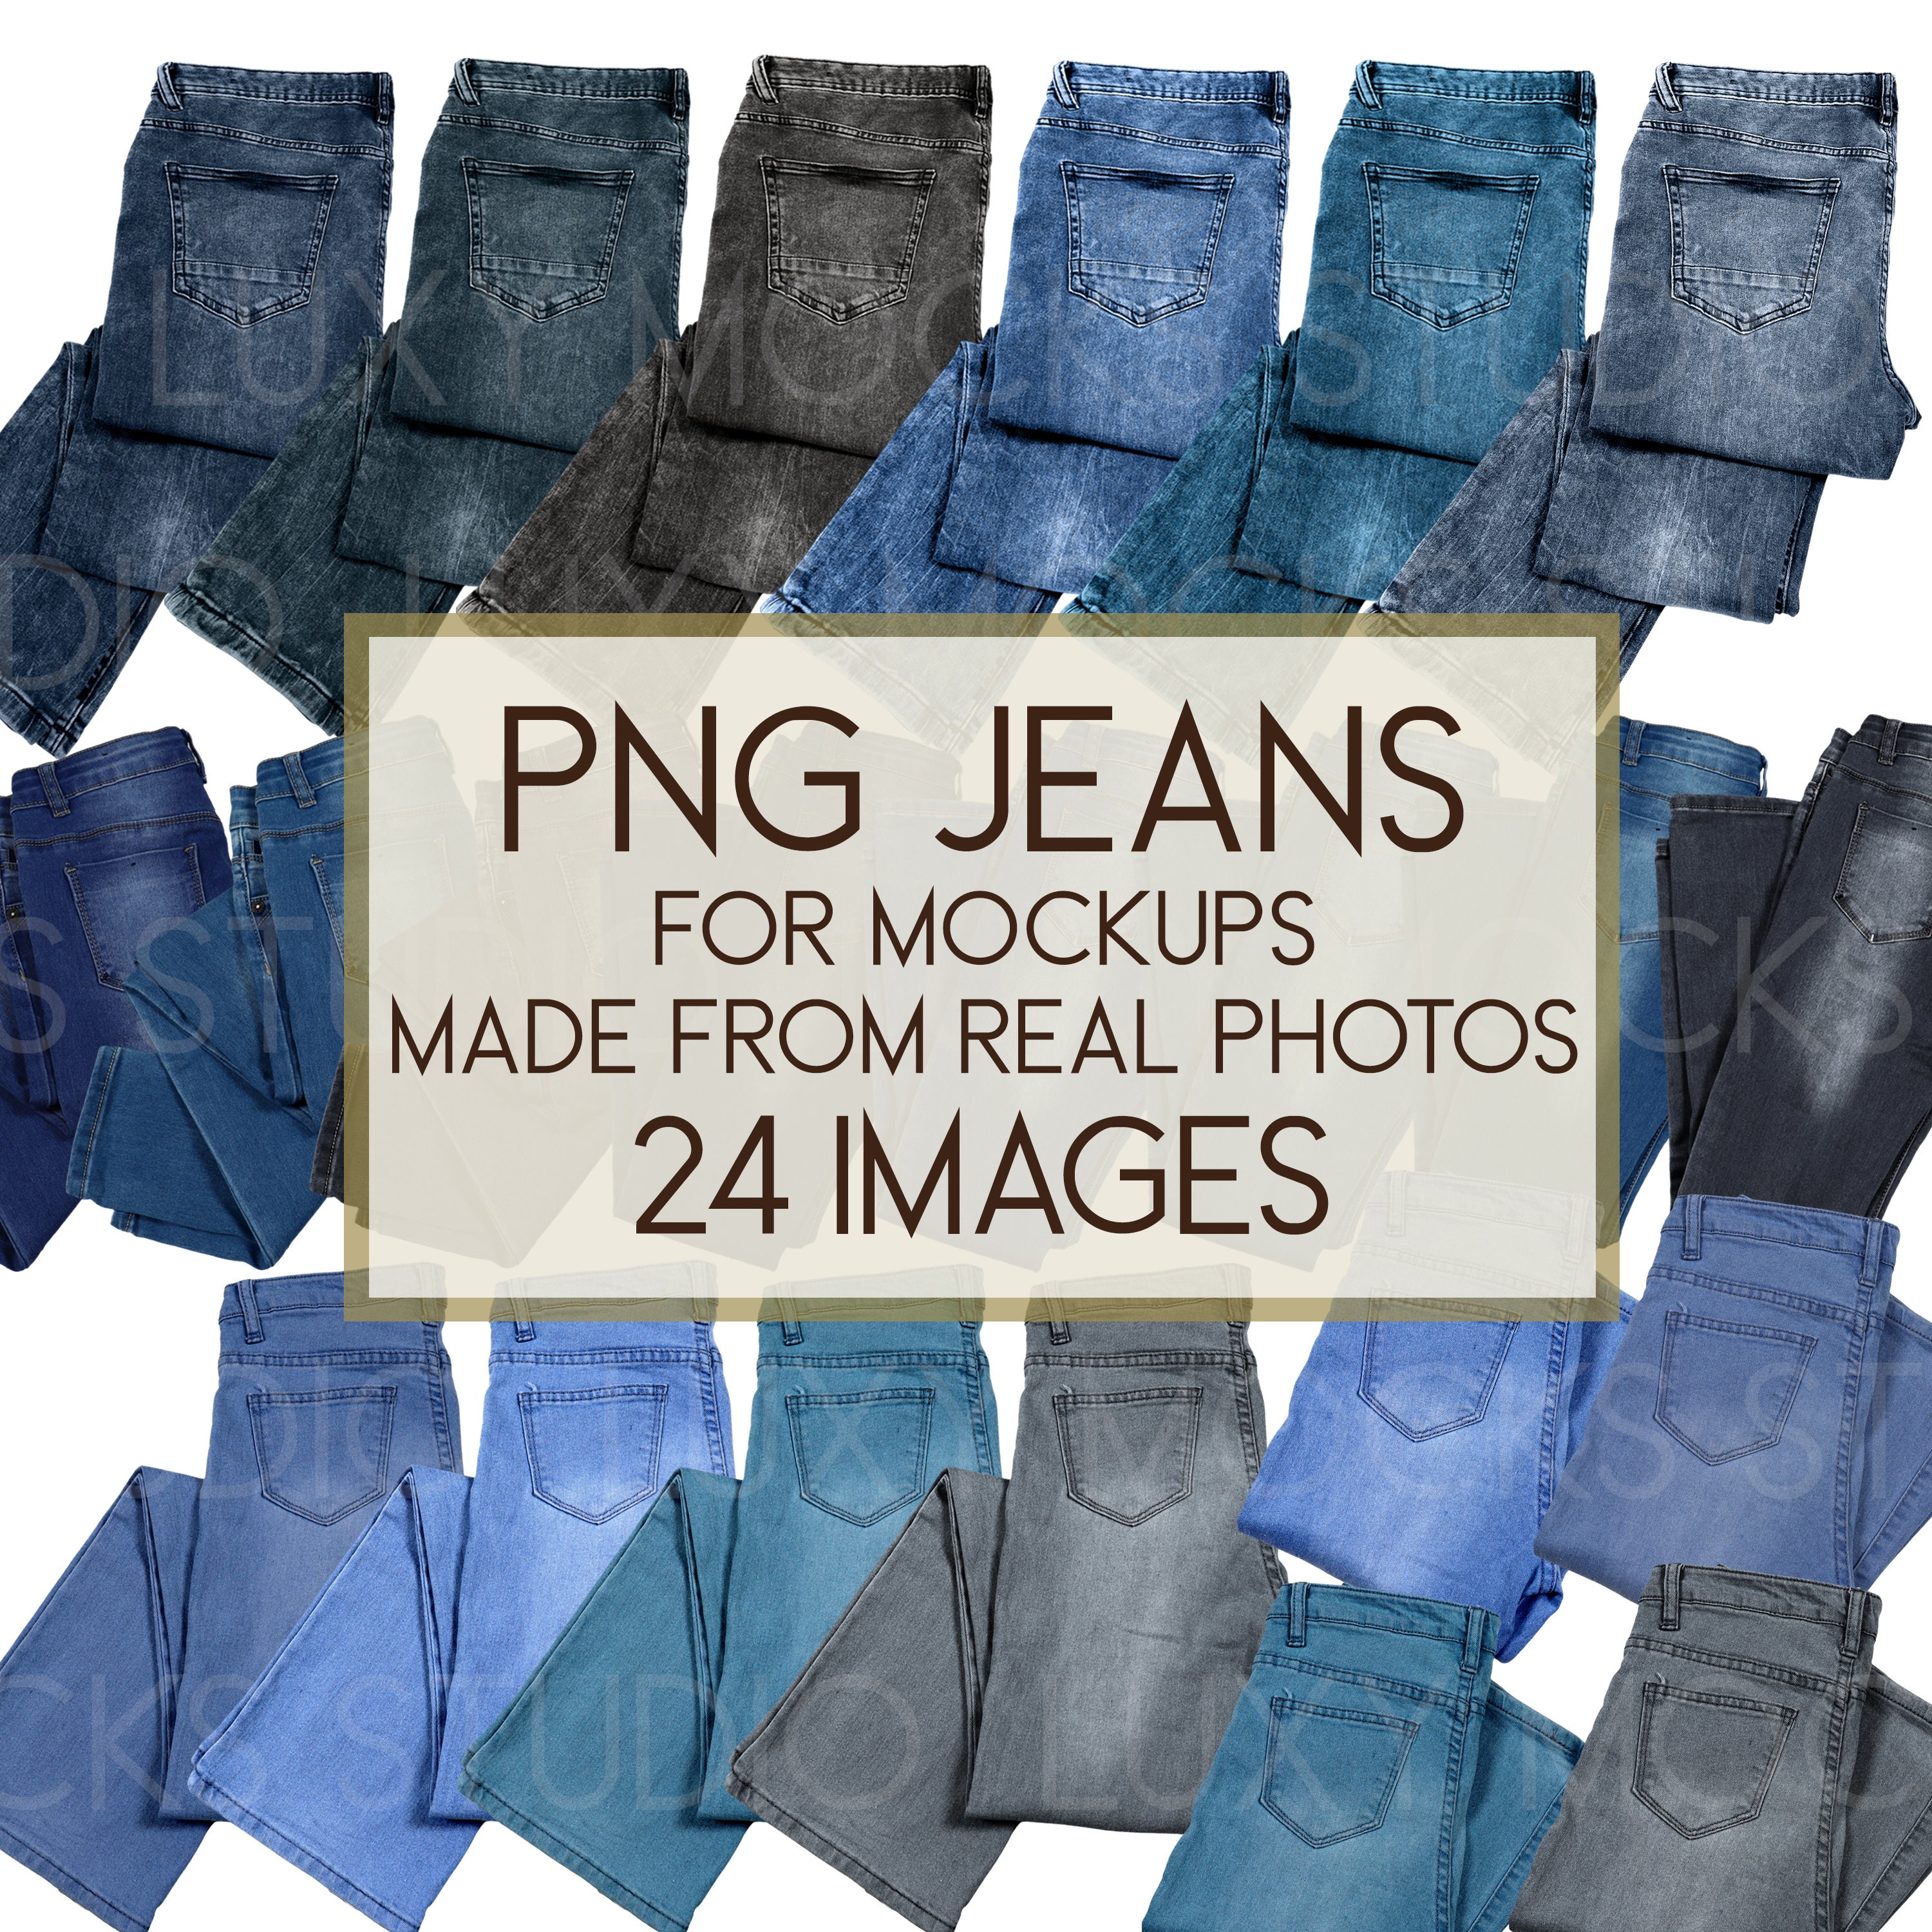 New Jeans BUNDLE SVG PNG Cut File for Cricut, Silhouette, Kpop New